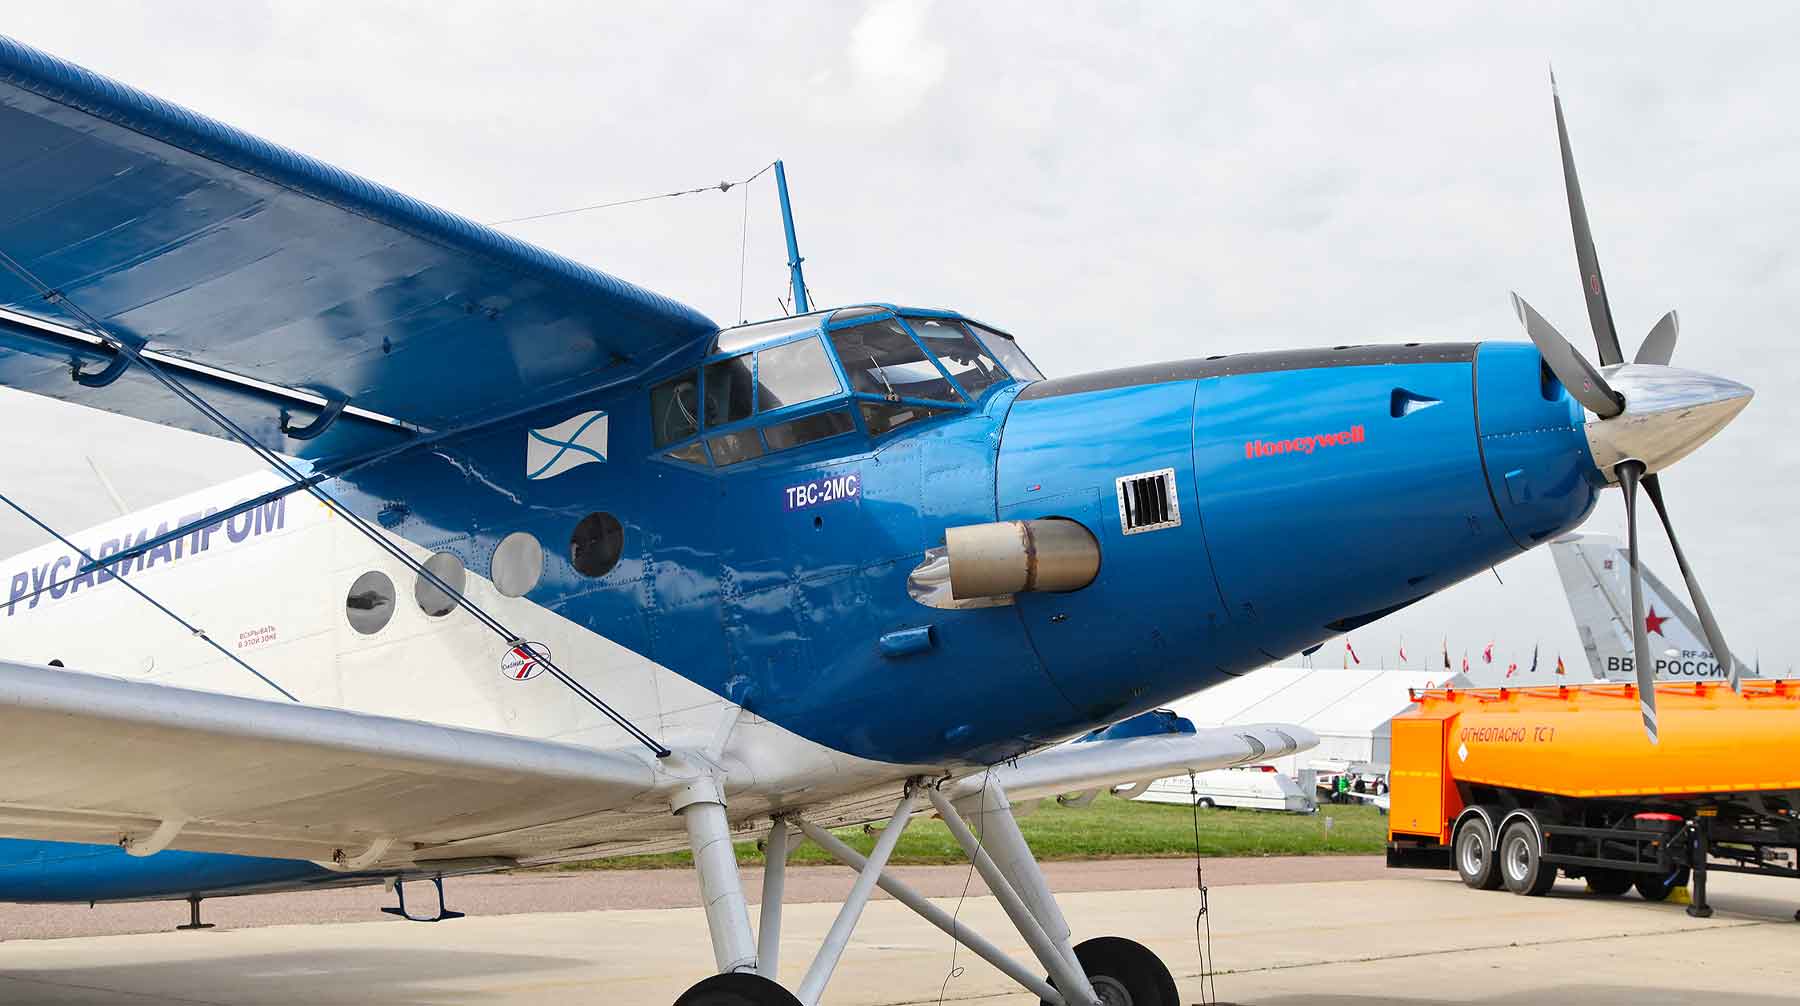 Два самолета ТВС-2МС с деталями, созданными компанией из США Honeywell, будут использовать в Магаданской области ТВС-2МС